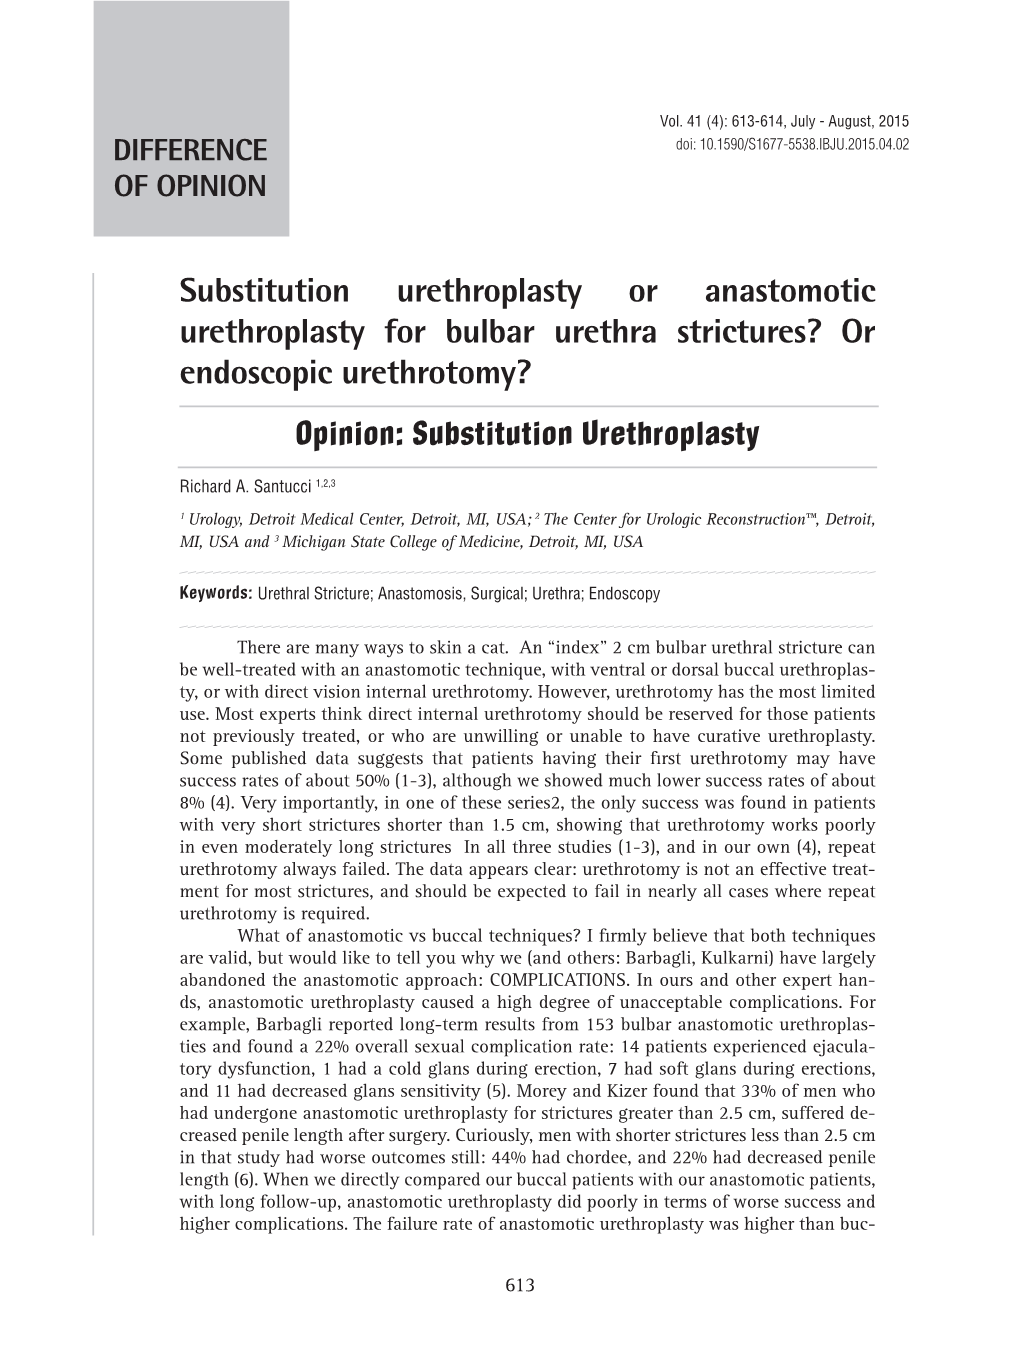 Substitution Urethroplasty Or Anastomotic Urethroplasty for Bulbar Urethra Strictures? Or Endoscopic Urethrotomy? Opinion: Substitution Urethroplasty